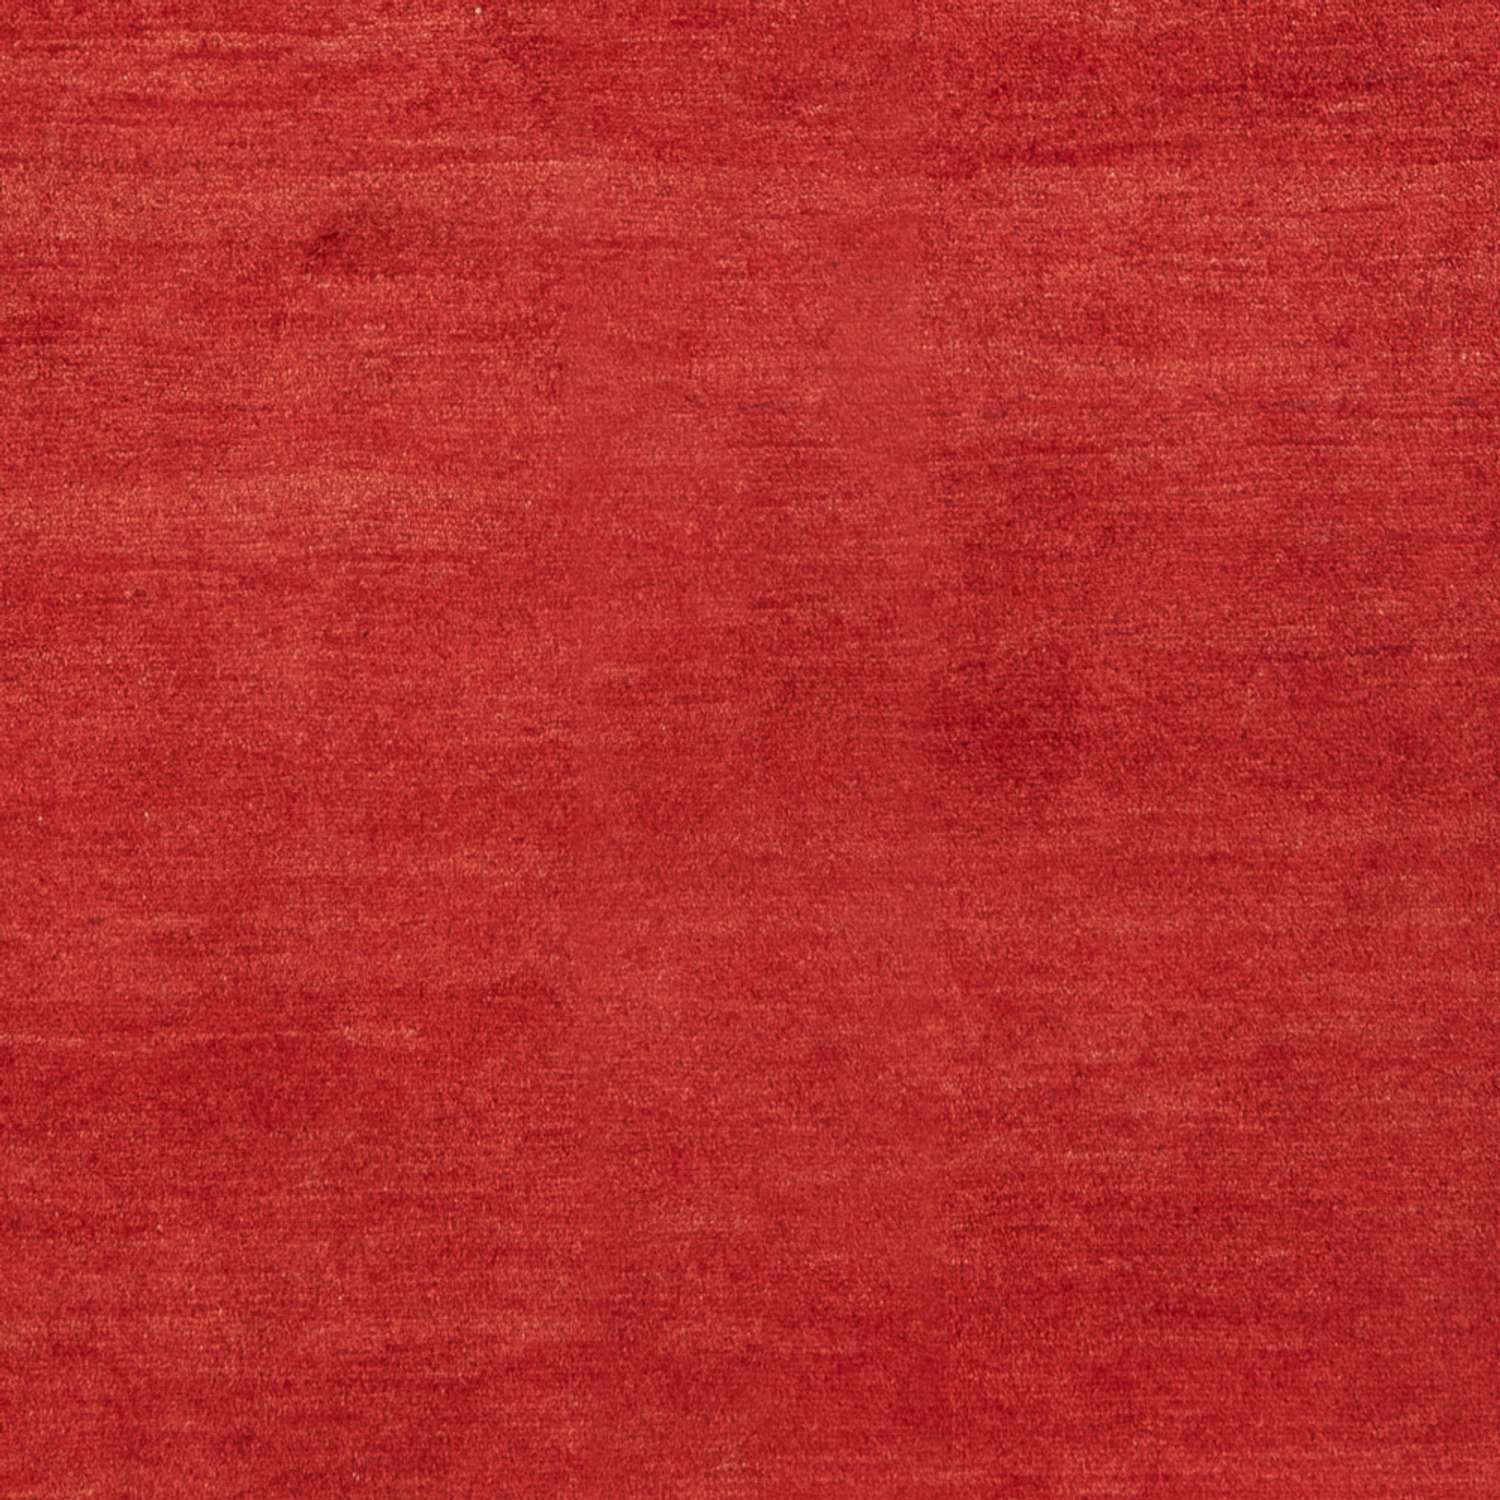 Gabbeh Koberec - Perský - 228 x 161 cm - červená